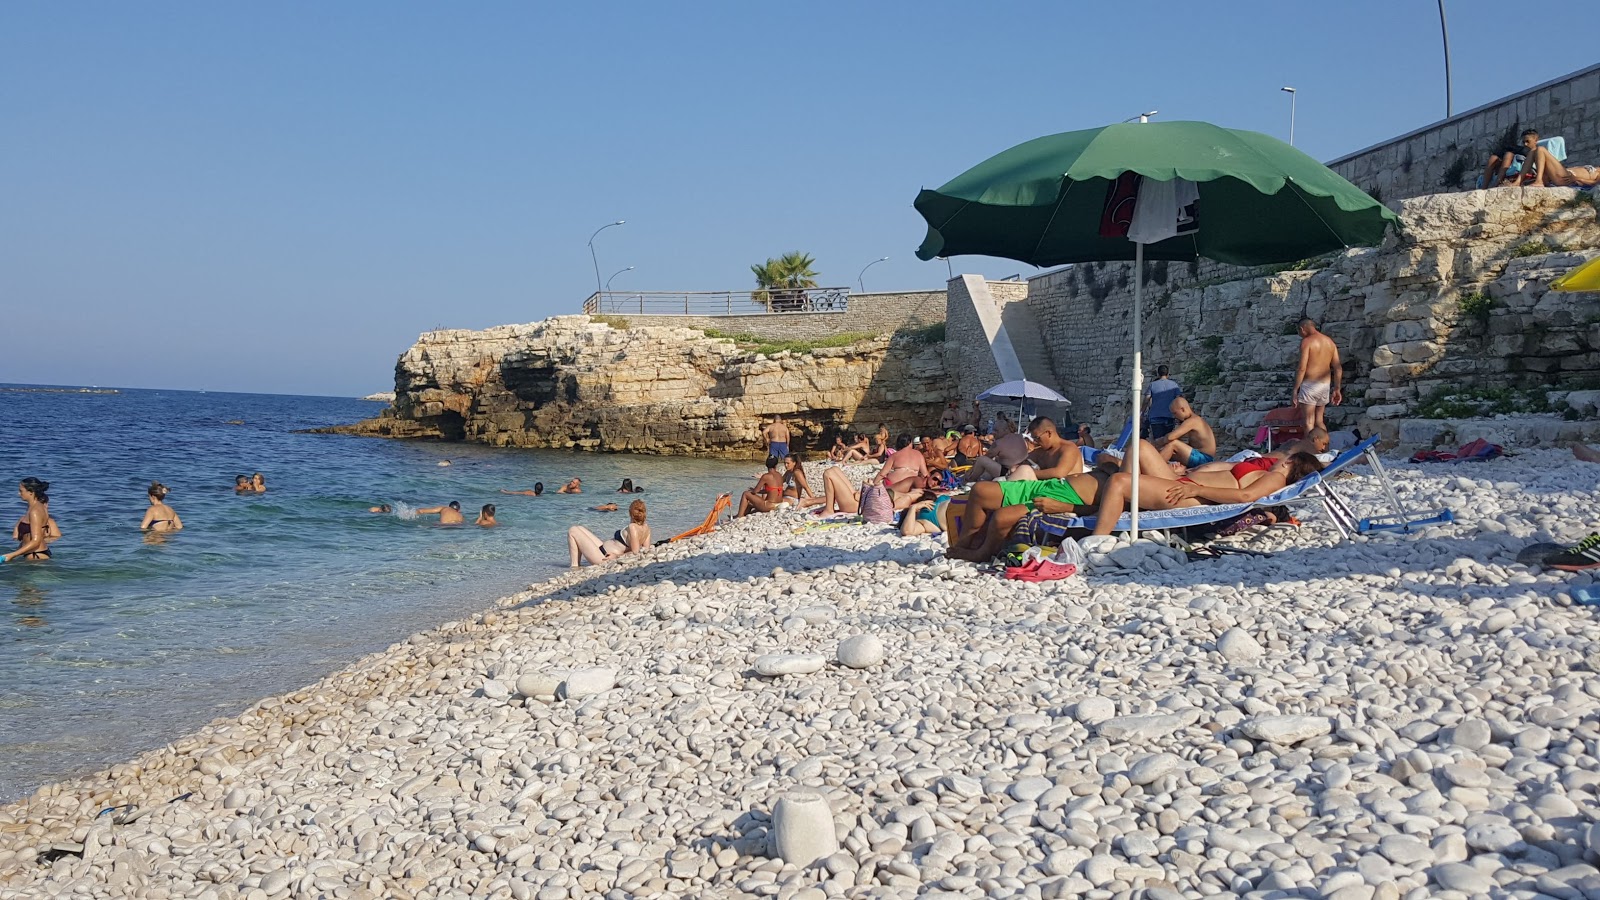 Spiaggia La Salata'in fotoğrafı doğrudan plaj ile birlikte